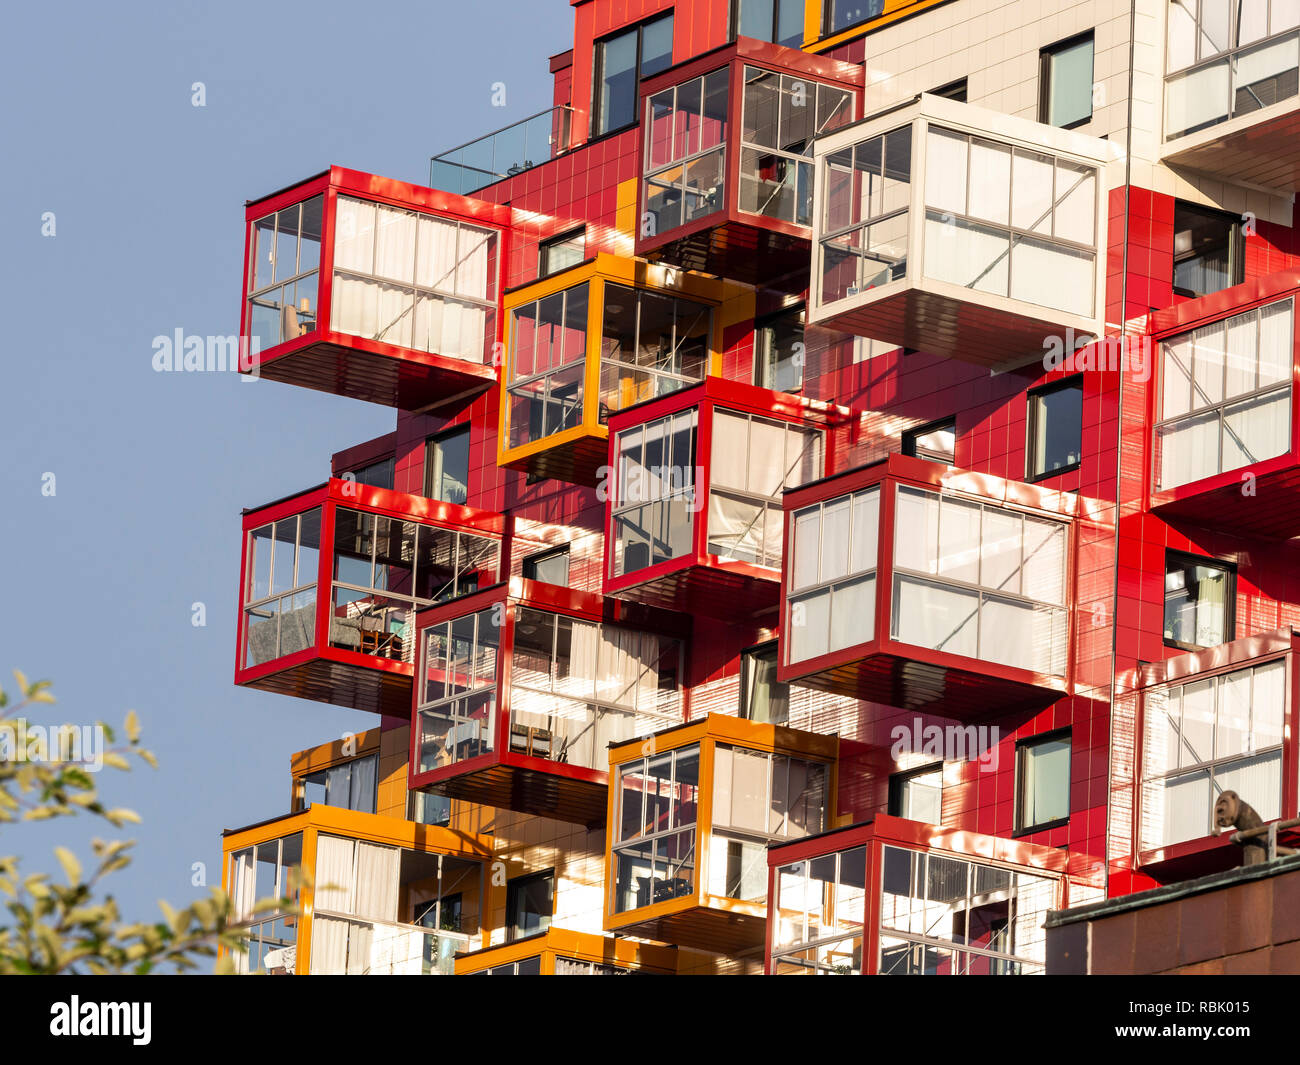 Bâtiment moderne de couleur, balcon, peint en rouge et orange, de la ville de Örnsköldsvik, Suède Banque D'Images